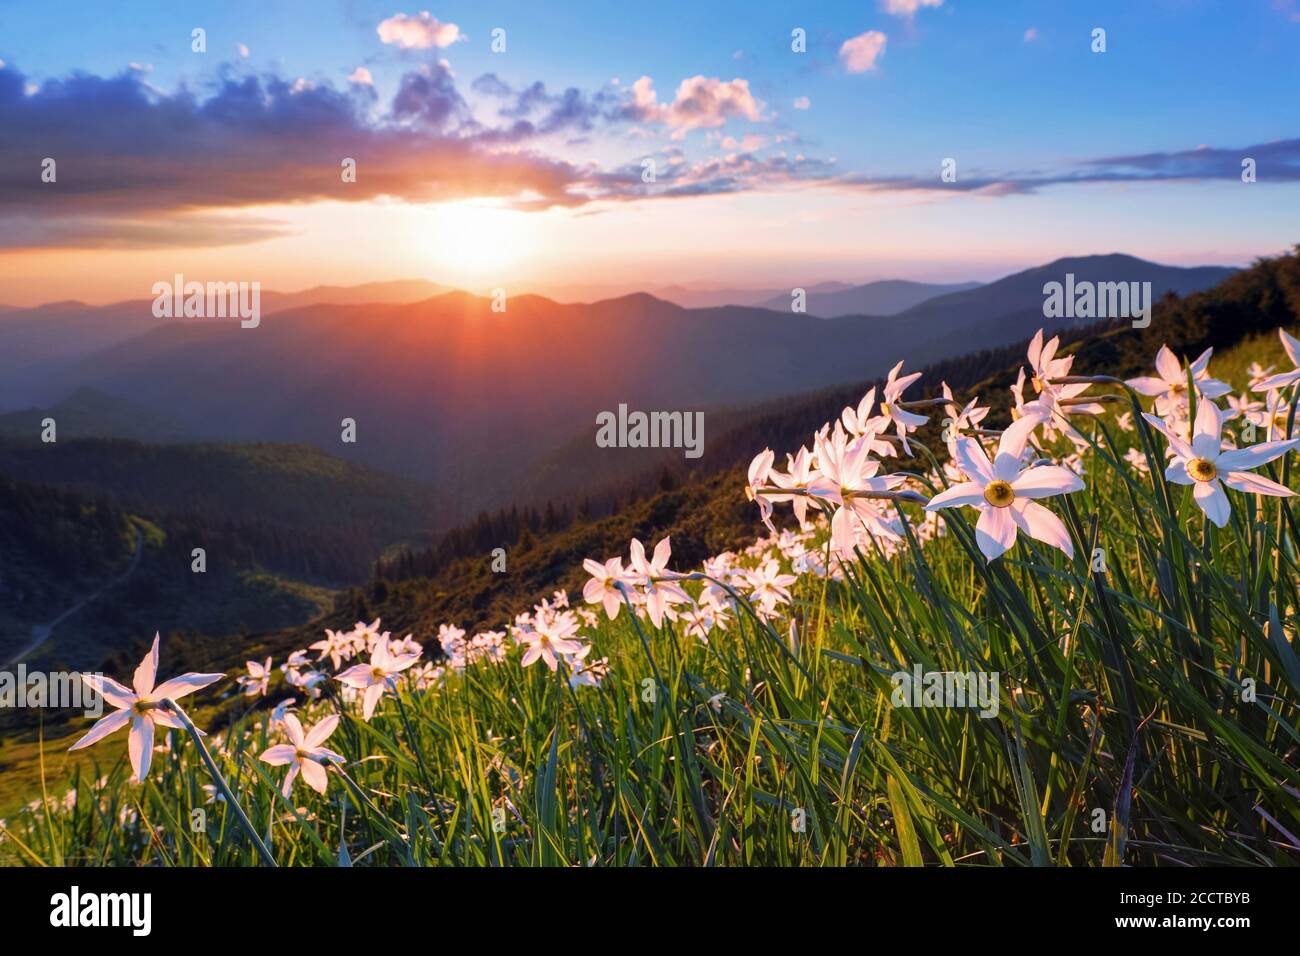 Schöne Narzissen Blumen. Der Sonnenuntergang mit Strahlen erhellt den Horizont. Himmel mit Wolken. Hohe Berge im Dunst. Hintergrund des Sommerhintergrunds. Entfällt Stockfoto